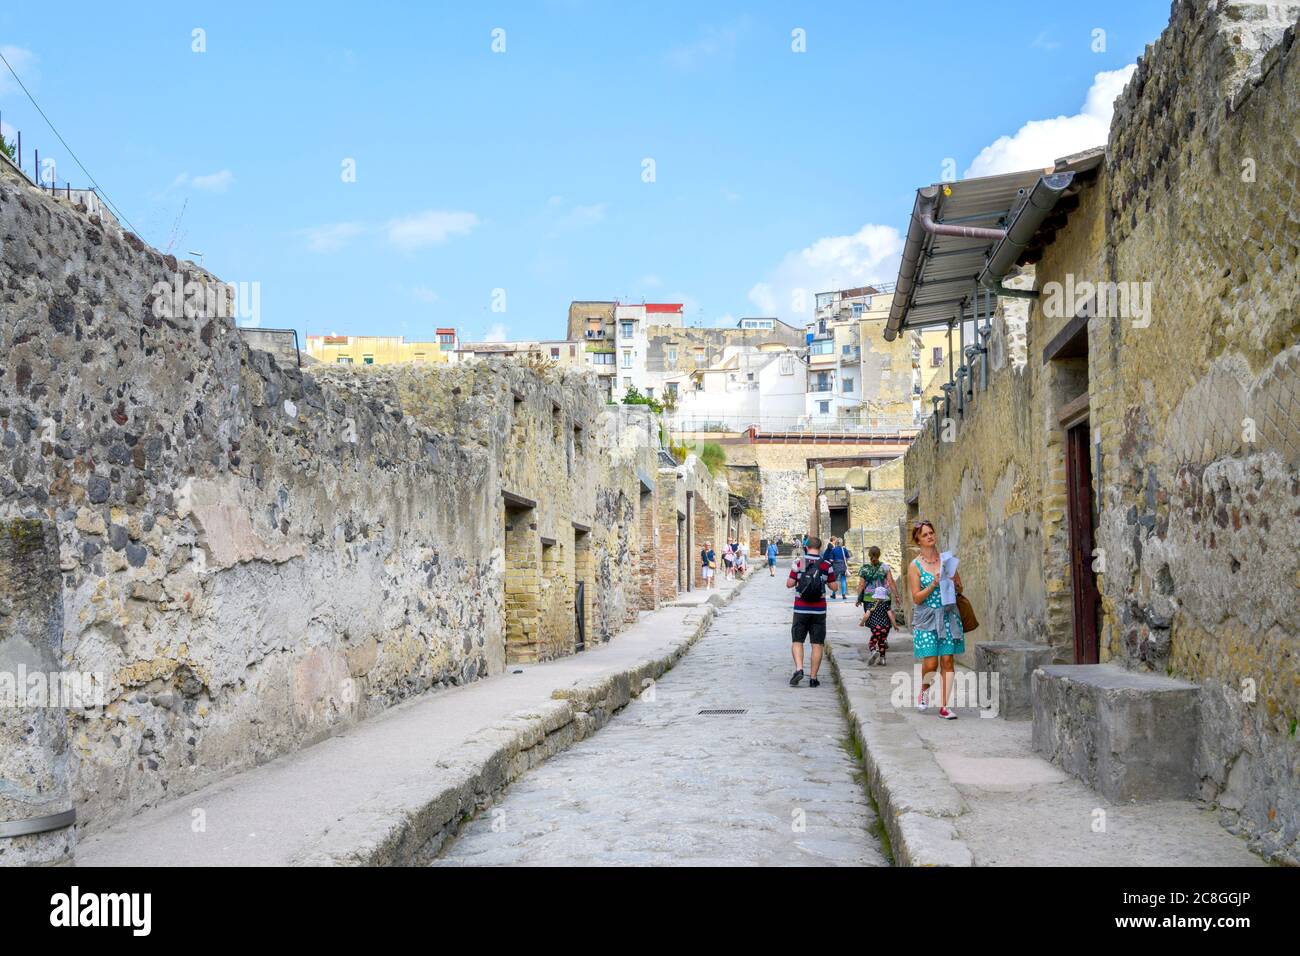 Si cammina lungo una strada tra edifici nella città romana di Ercolano, parzialmente distrutta dall'eruzione del Vesuvio nel 79 d.C. Foto Stock